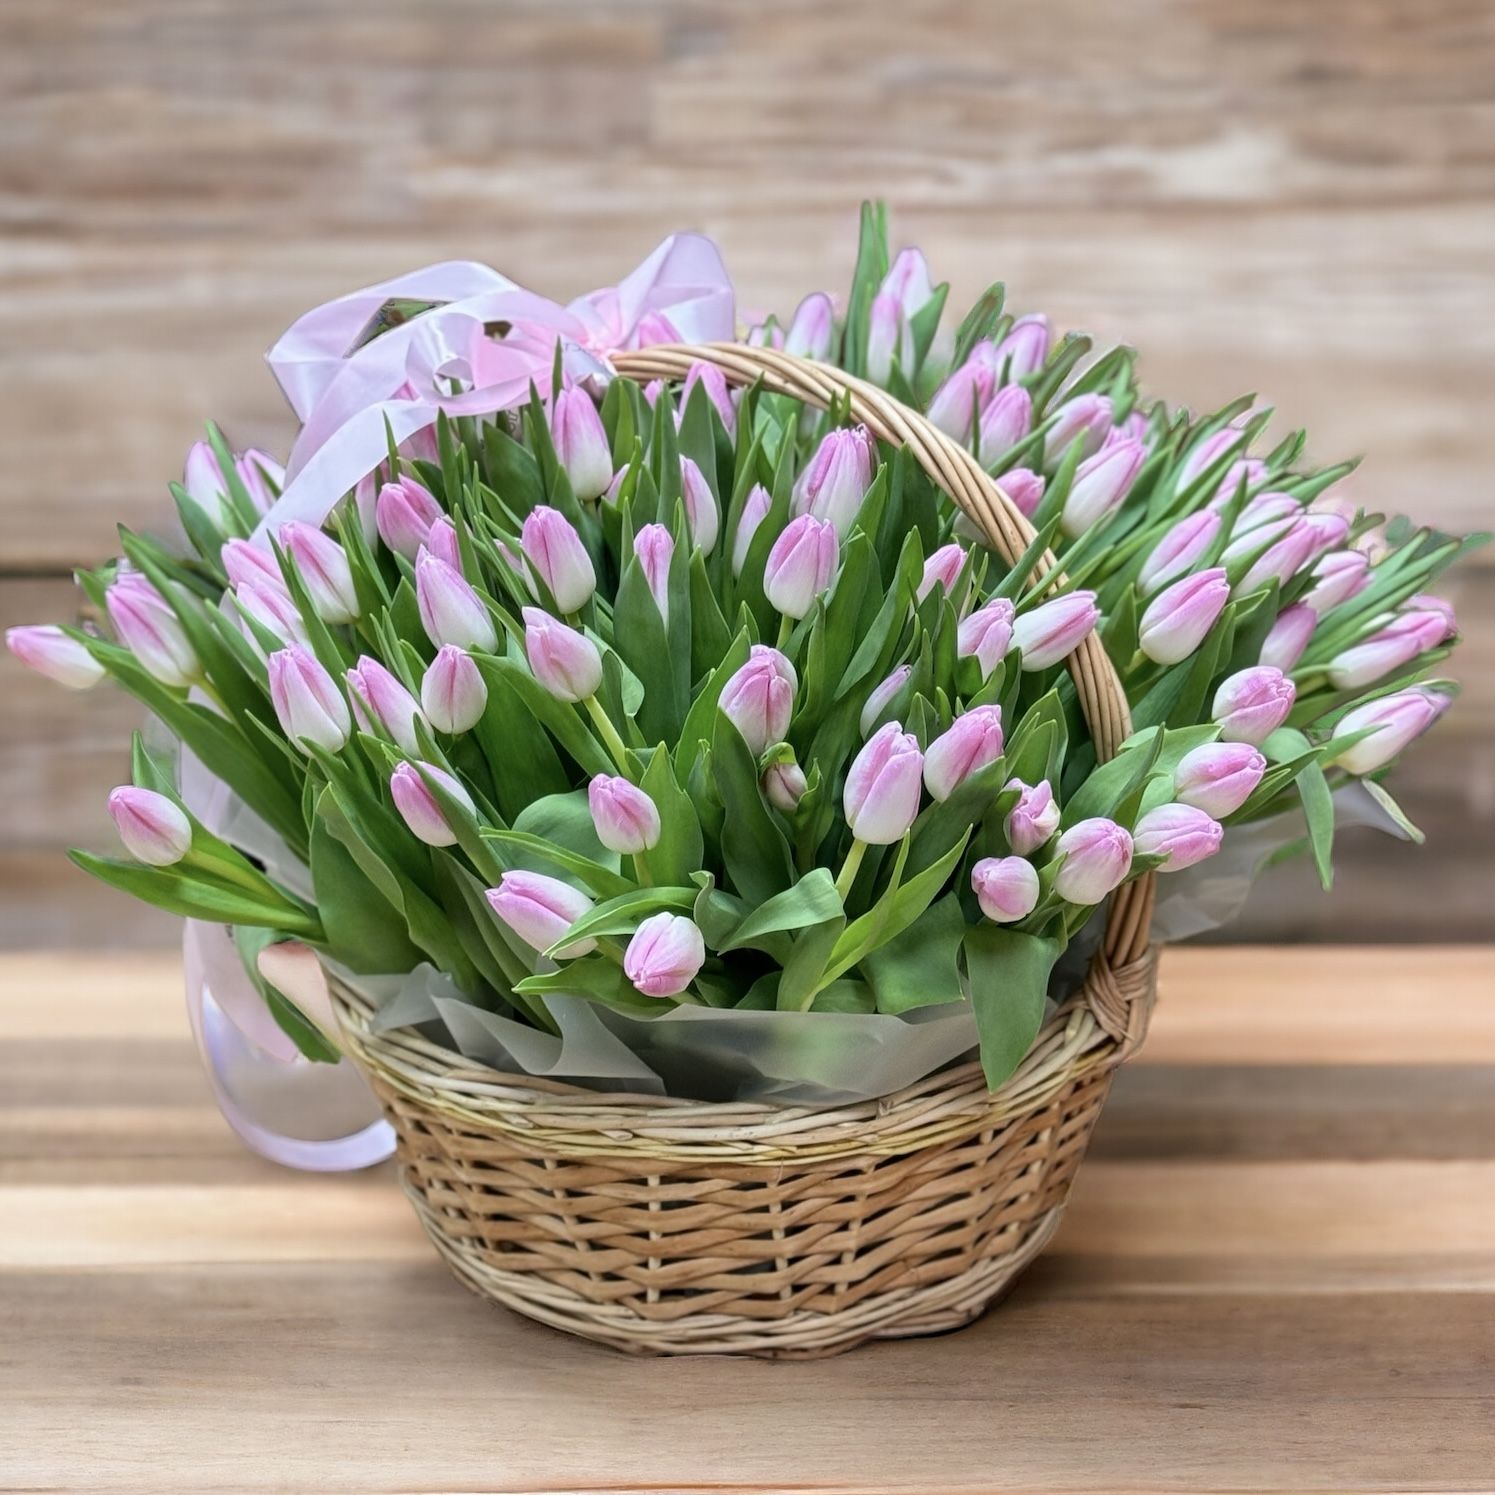 101 tulips in a basket Kiev